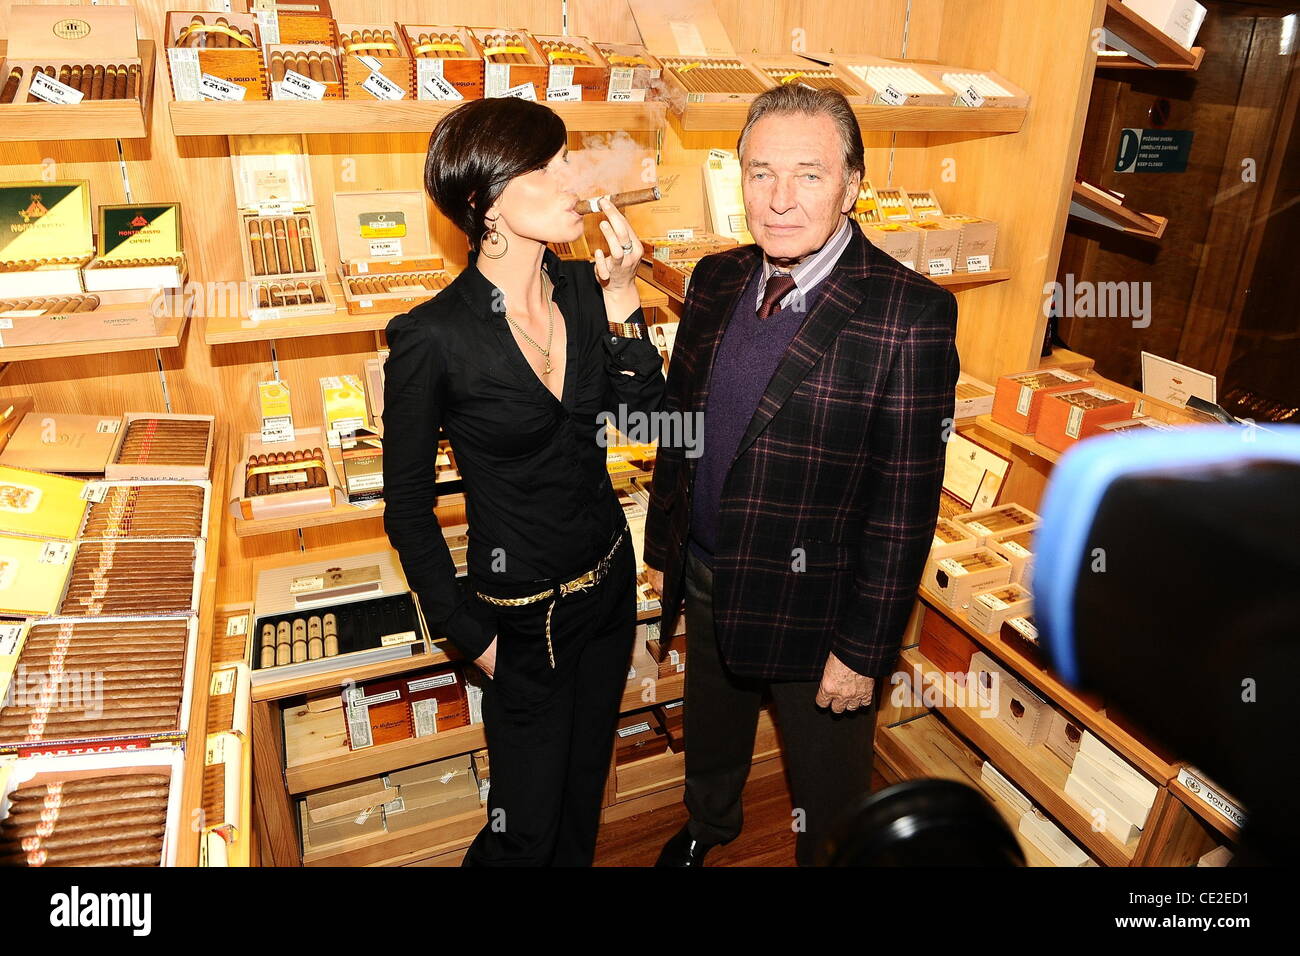 À Karel Gott l'inauguration d'un nouveau magasin de cigares à l'hôtel Hilton de Prague. Prague, République tchèque - 19.10.2010 Banque D'Images